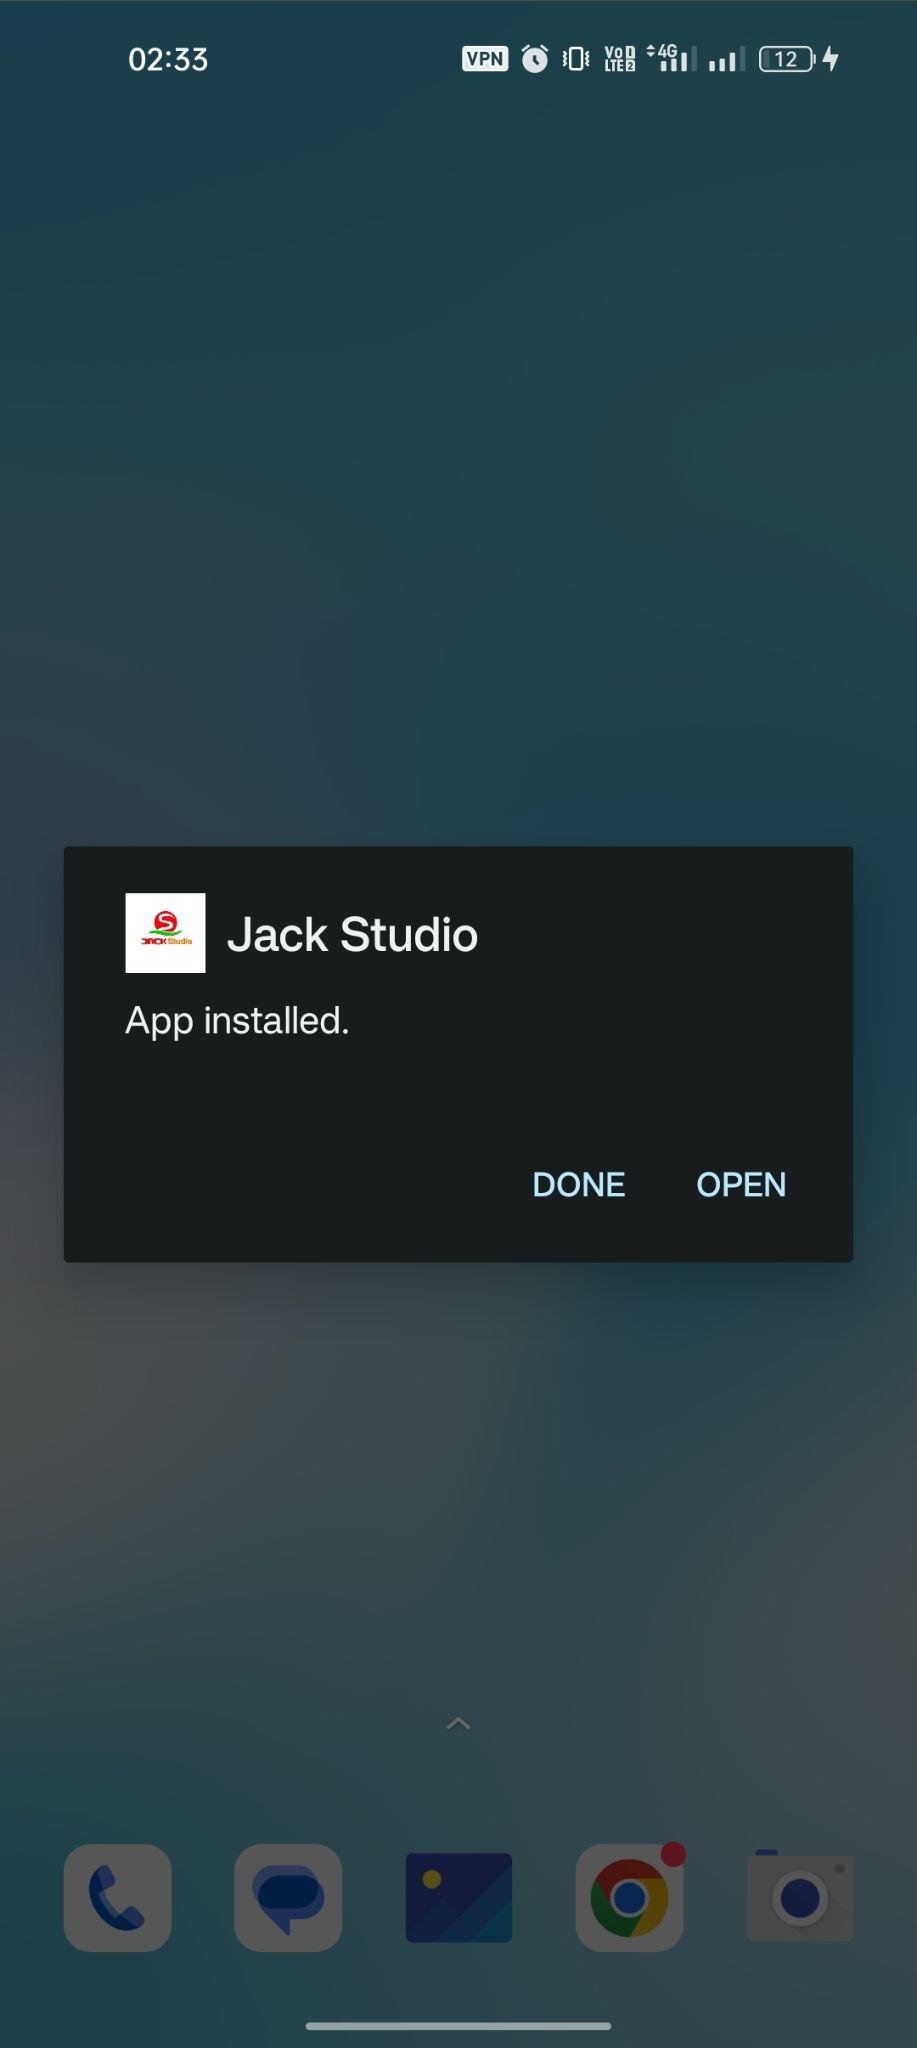 Jock Studio apk installed